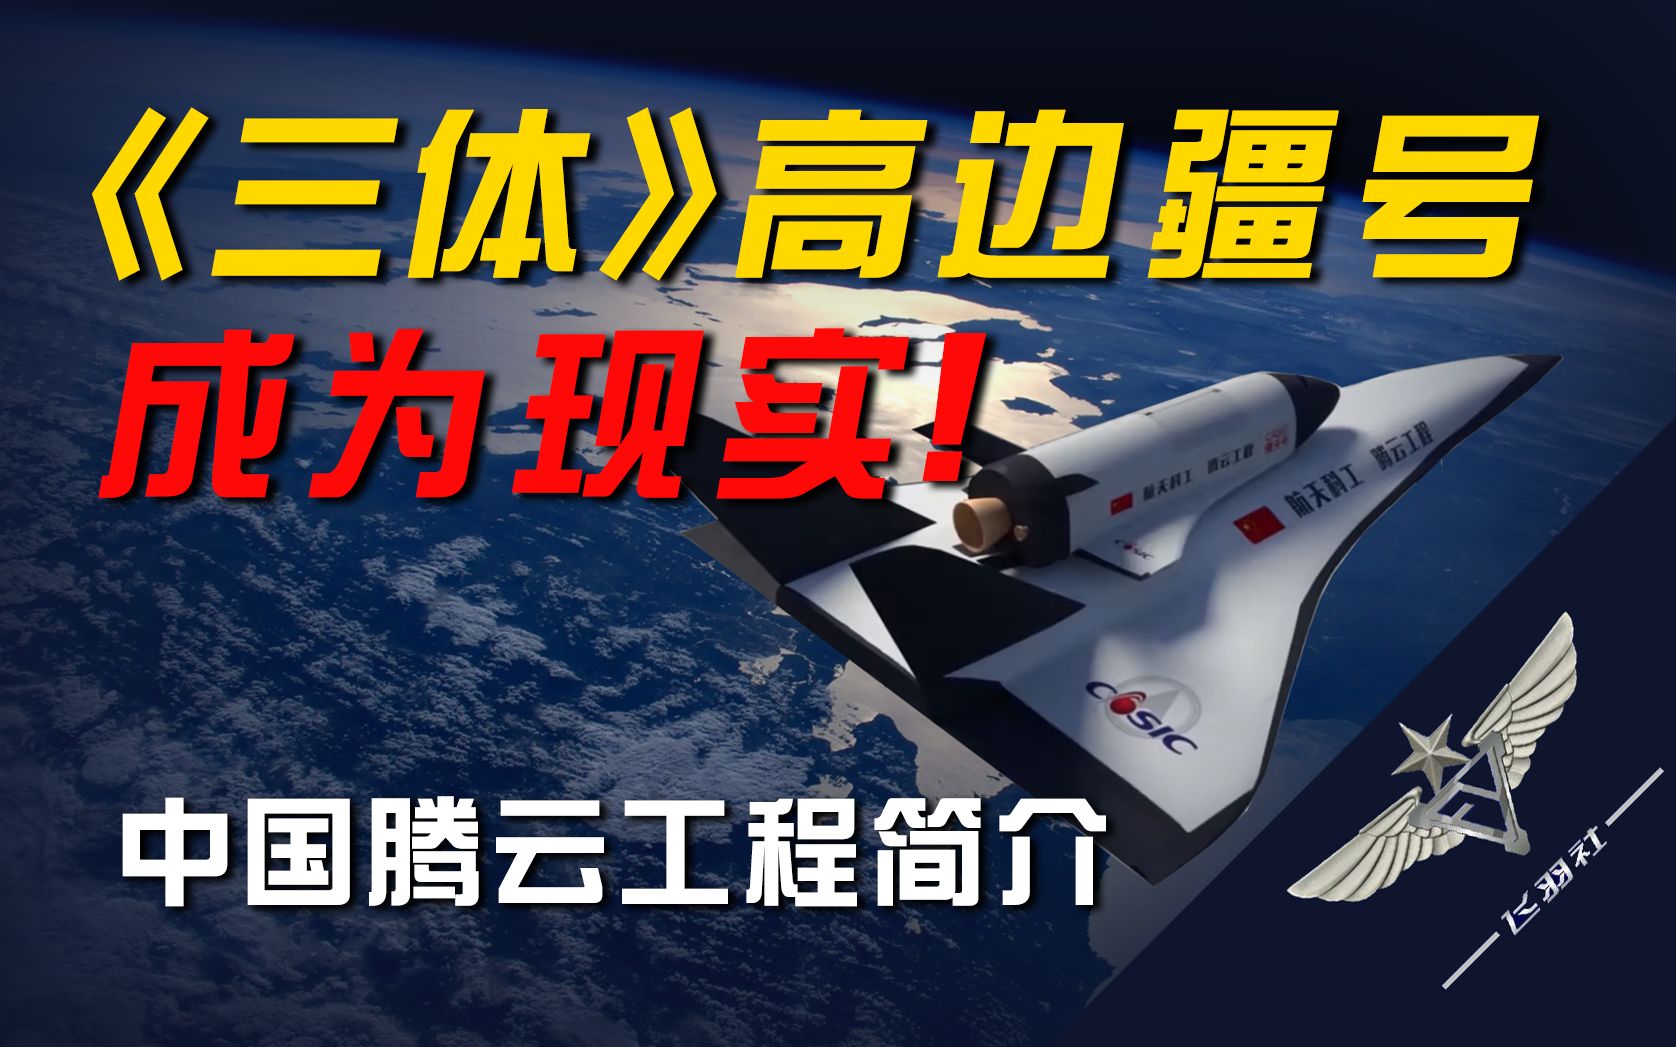 【飞羽社】中国空天飞机发展计划——“腾云工程”到底是什么？